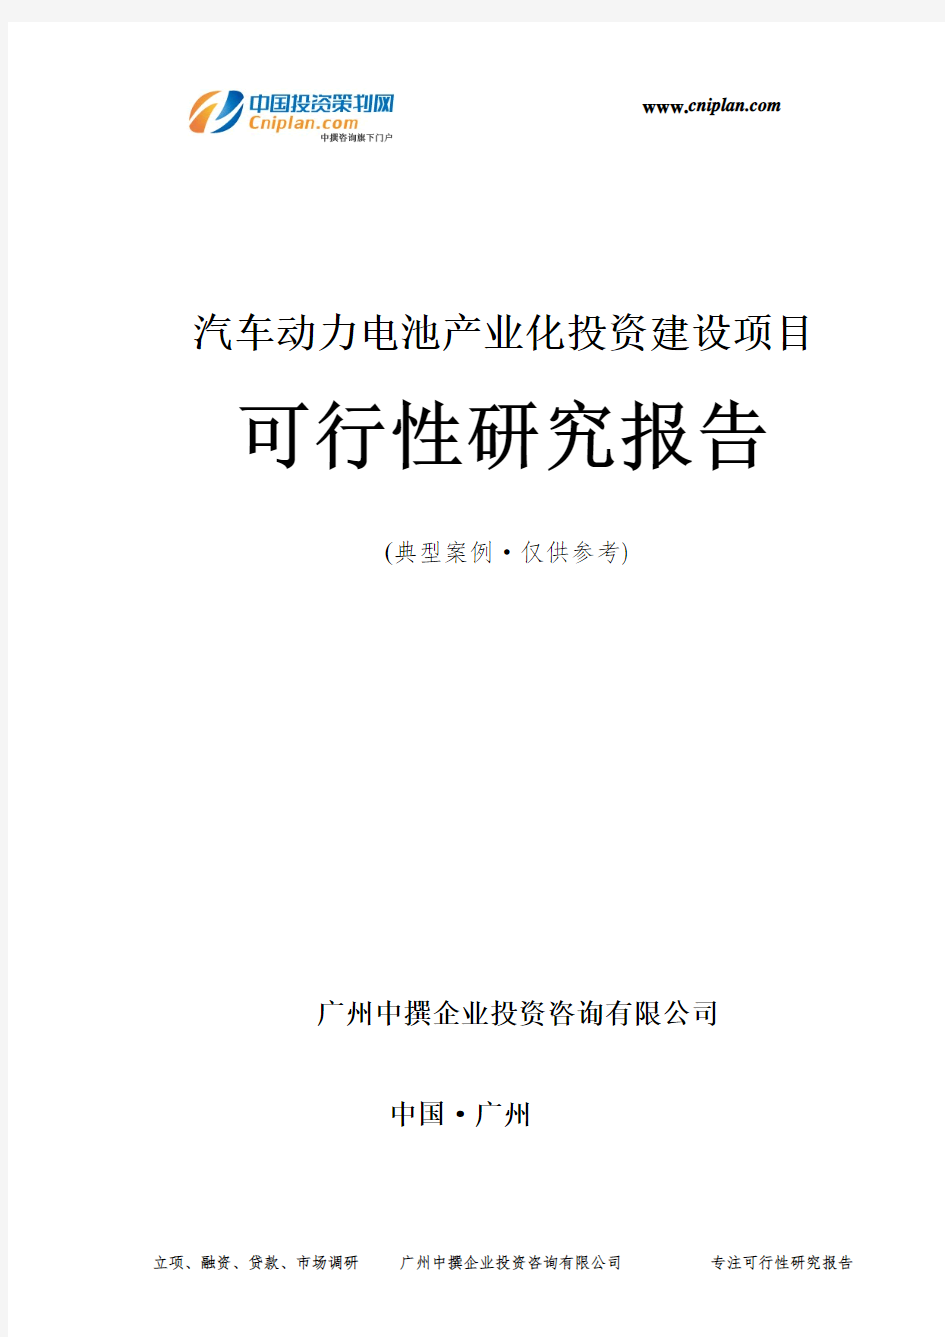 汽车动力电池产业化投资建设项目可行性研究报告-广州中撰咨询